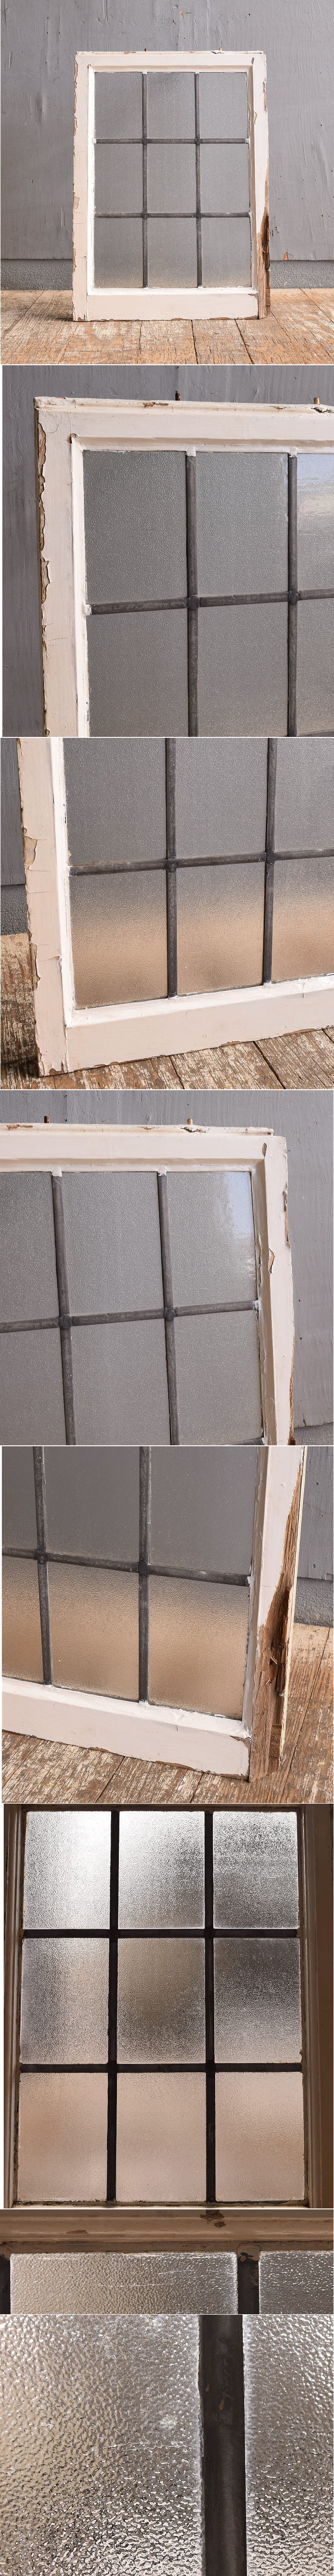 イギリス アンティーク 窓 無色透明 12460